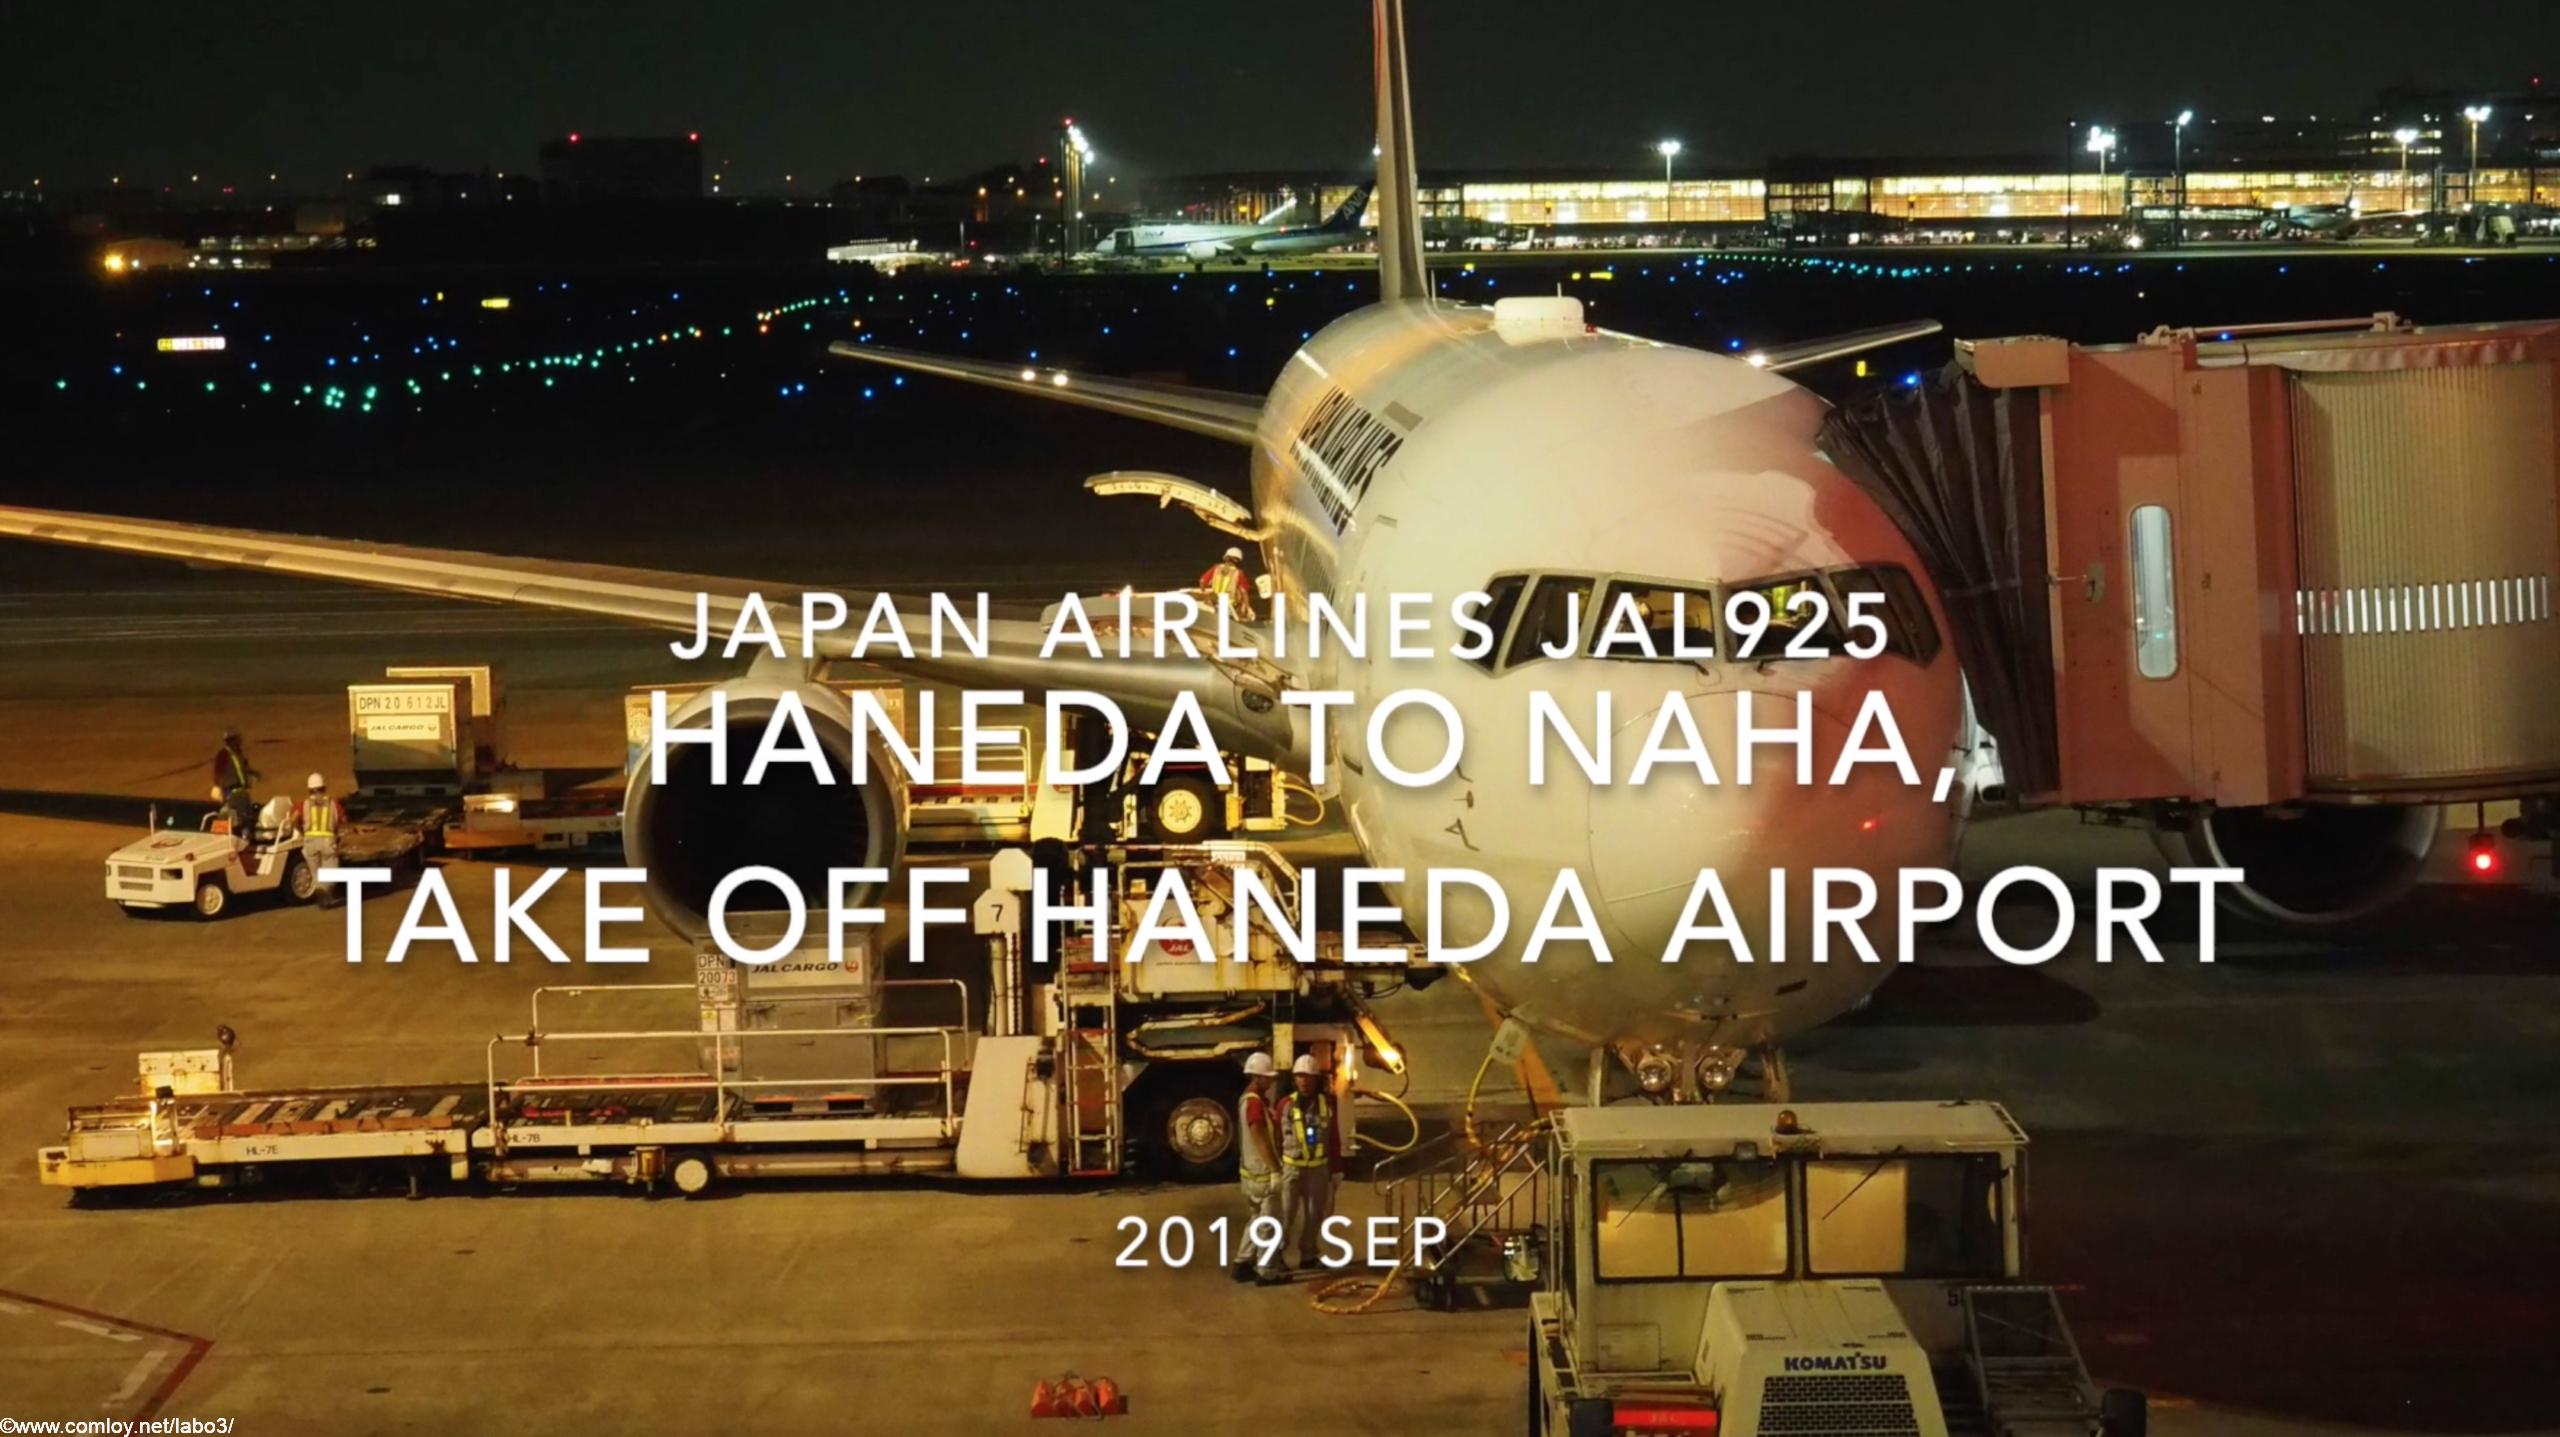 【機内から離着陸映像】2019 Sep Japan Airlines JAL925 HANEDA to NAHA, Take off HANEDA Airport